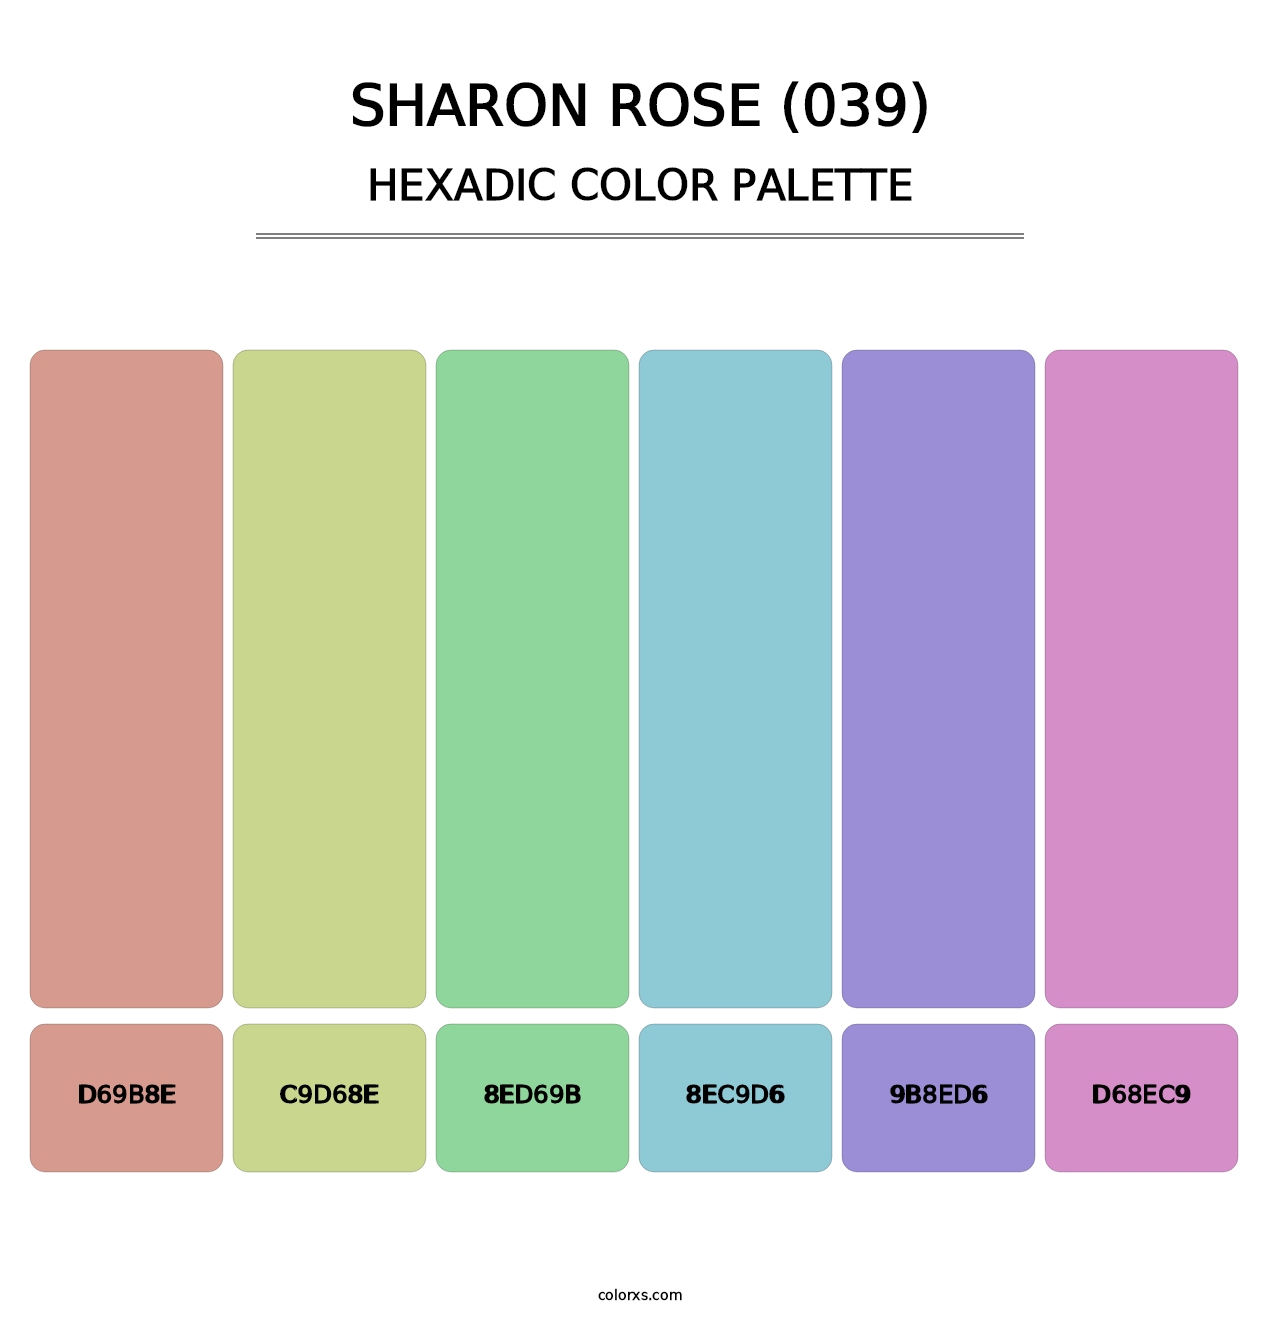 Sharon Rose (039) - Hexadic Color Palette